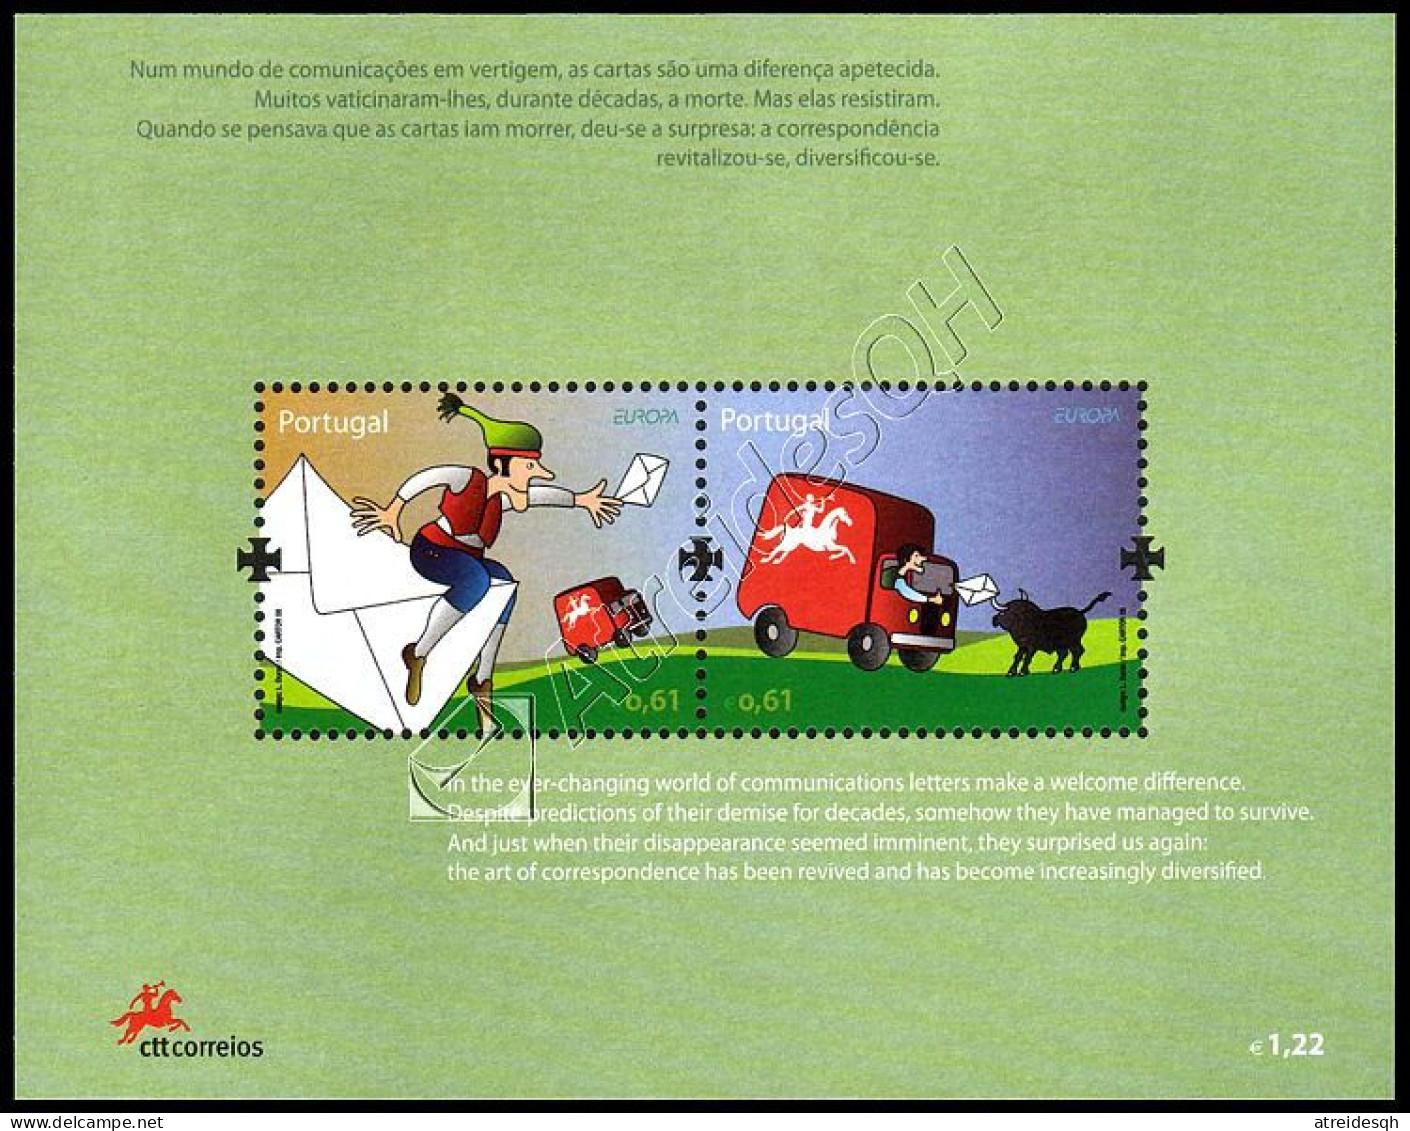 Portogallo-Azzorre- Madeira / Portugal-Azores-Madeira 2008: 3 Foglietti Europa - La Lettera / The Letter, 3 S/S ** - 2008